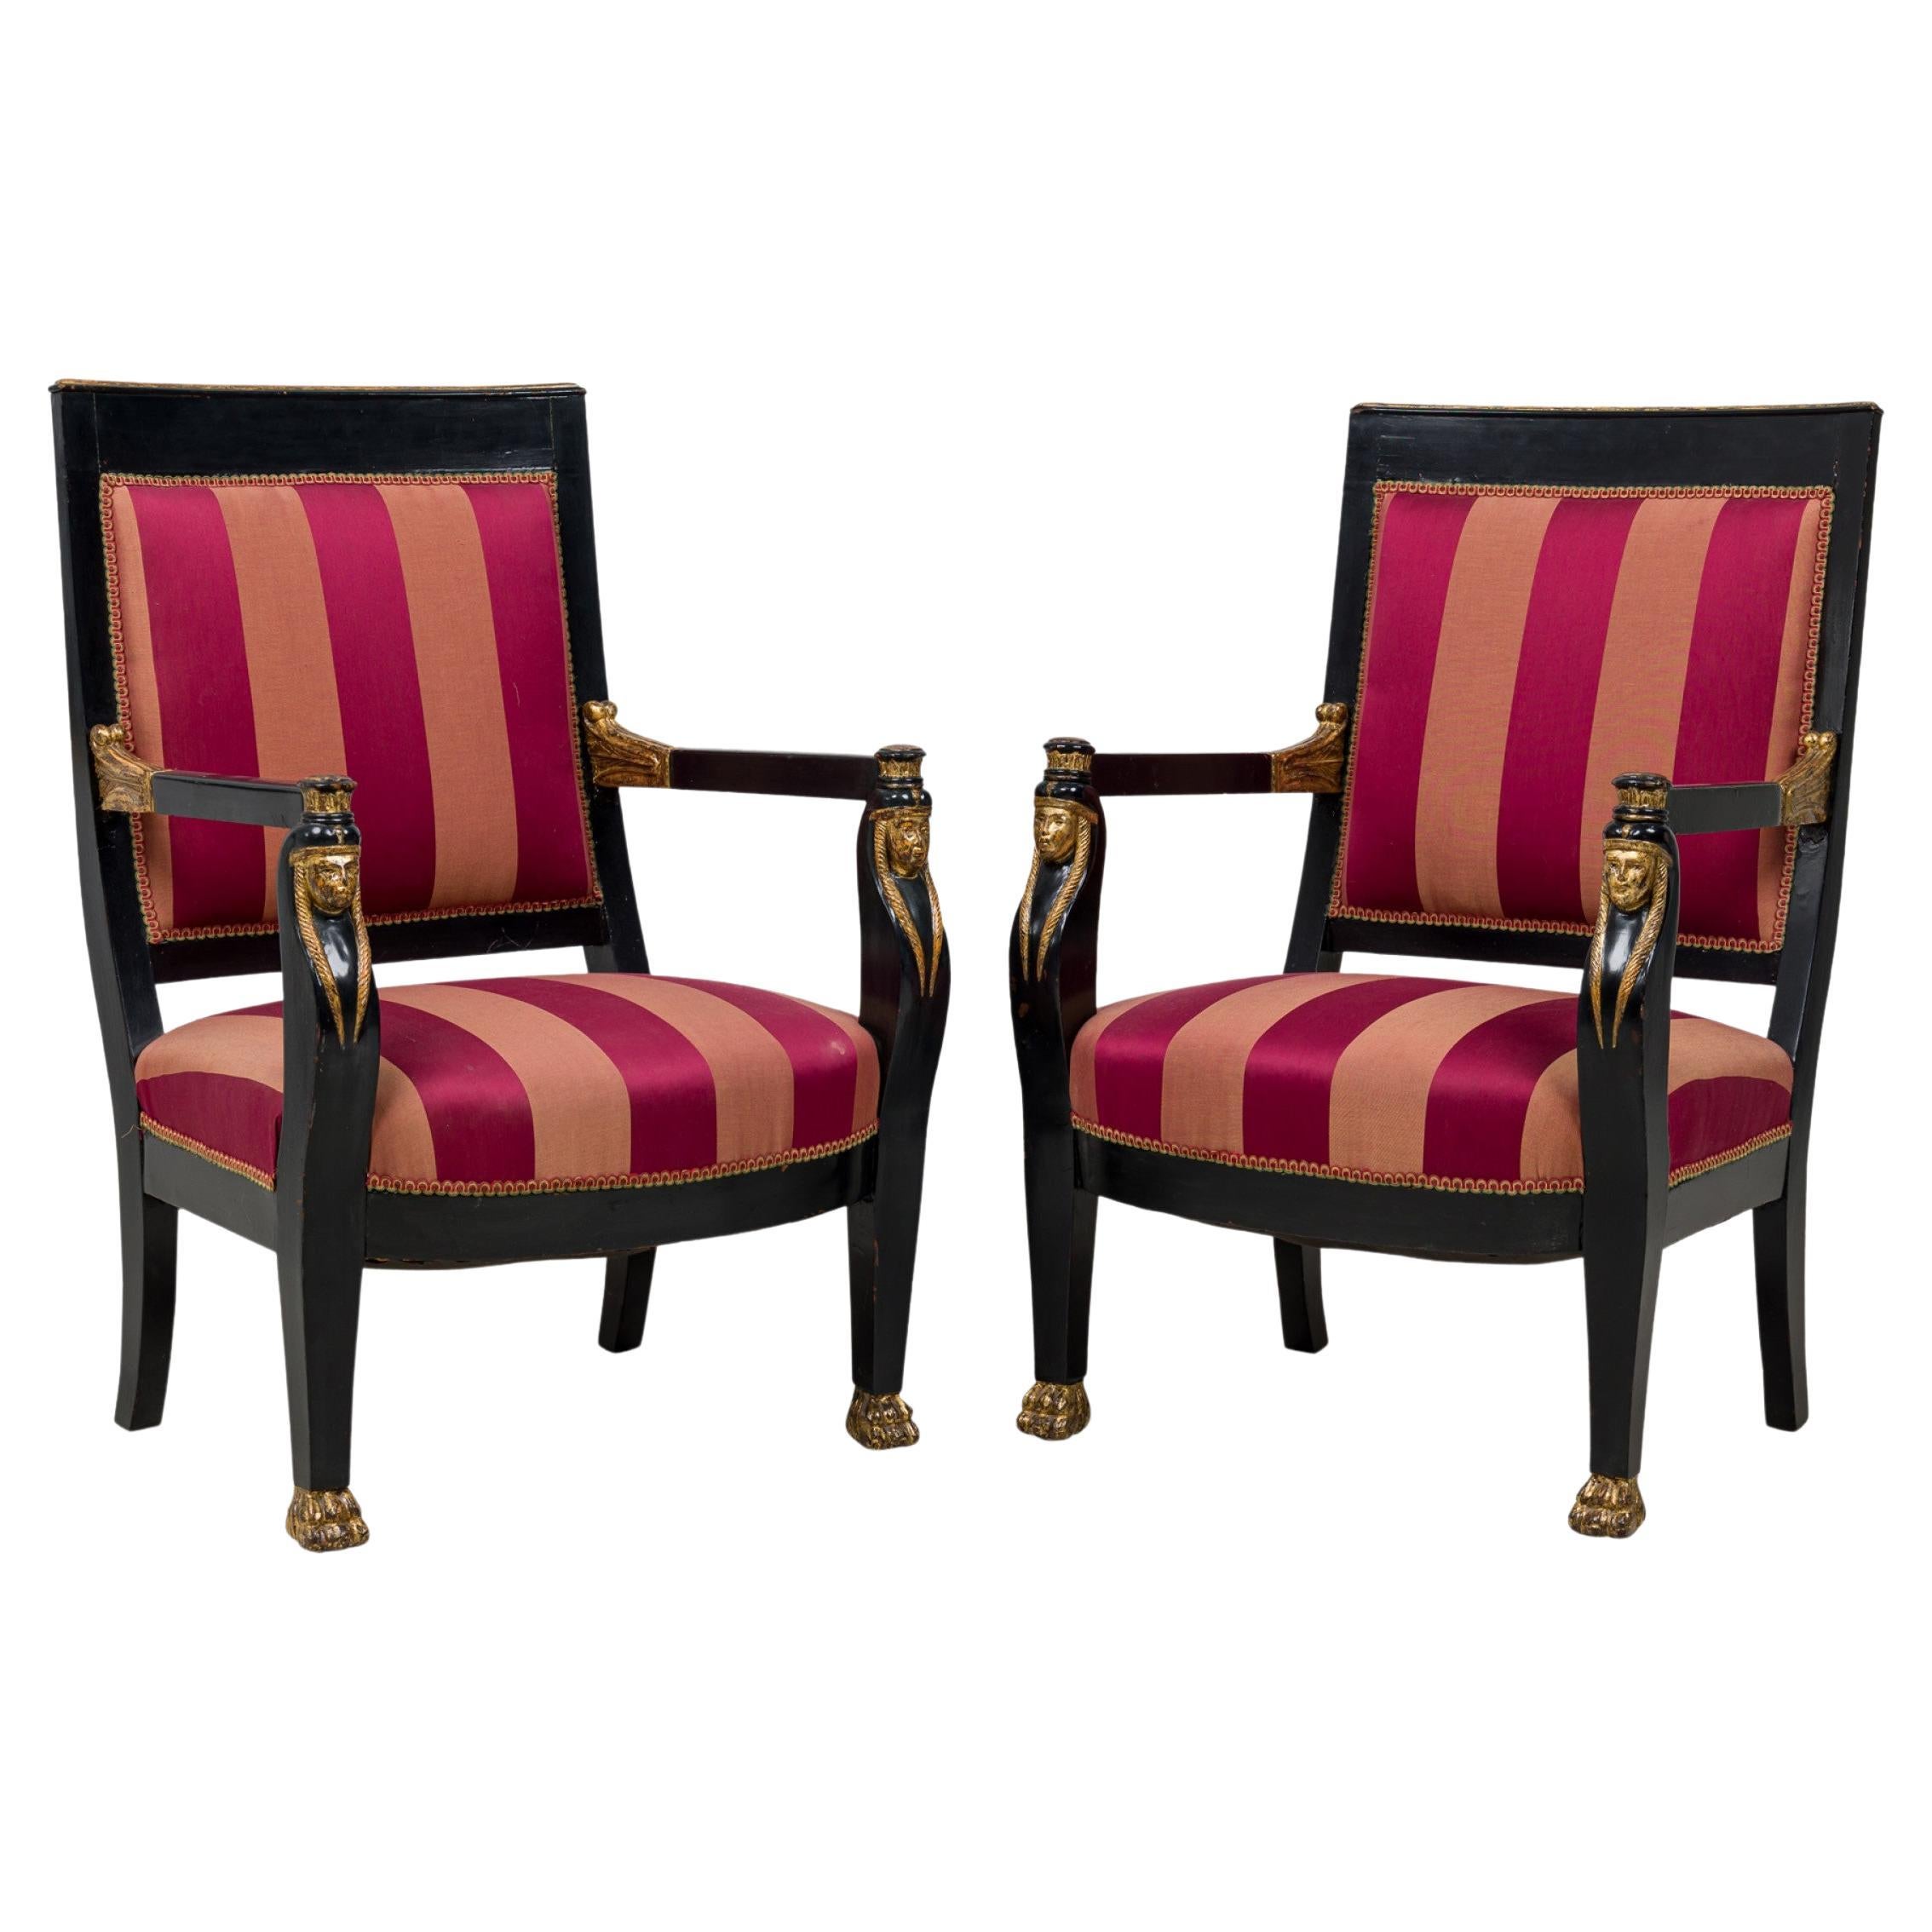 Paar italienische neoklassizistische, ebonisierte und teilweise vergoldete rote gepolsterte Sessel